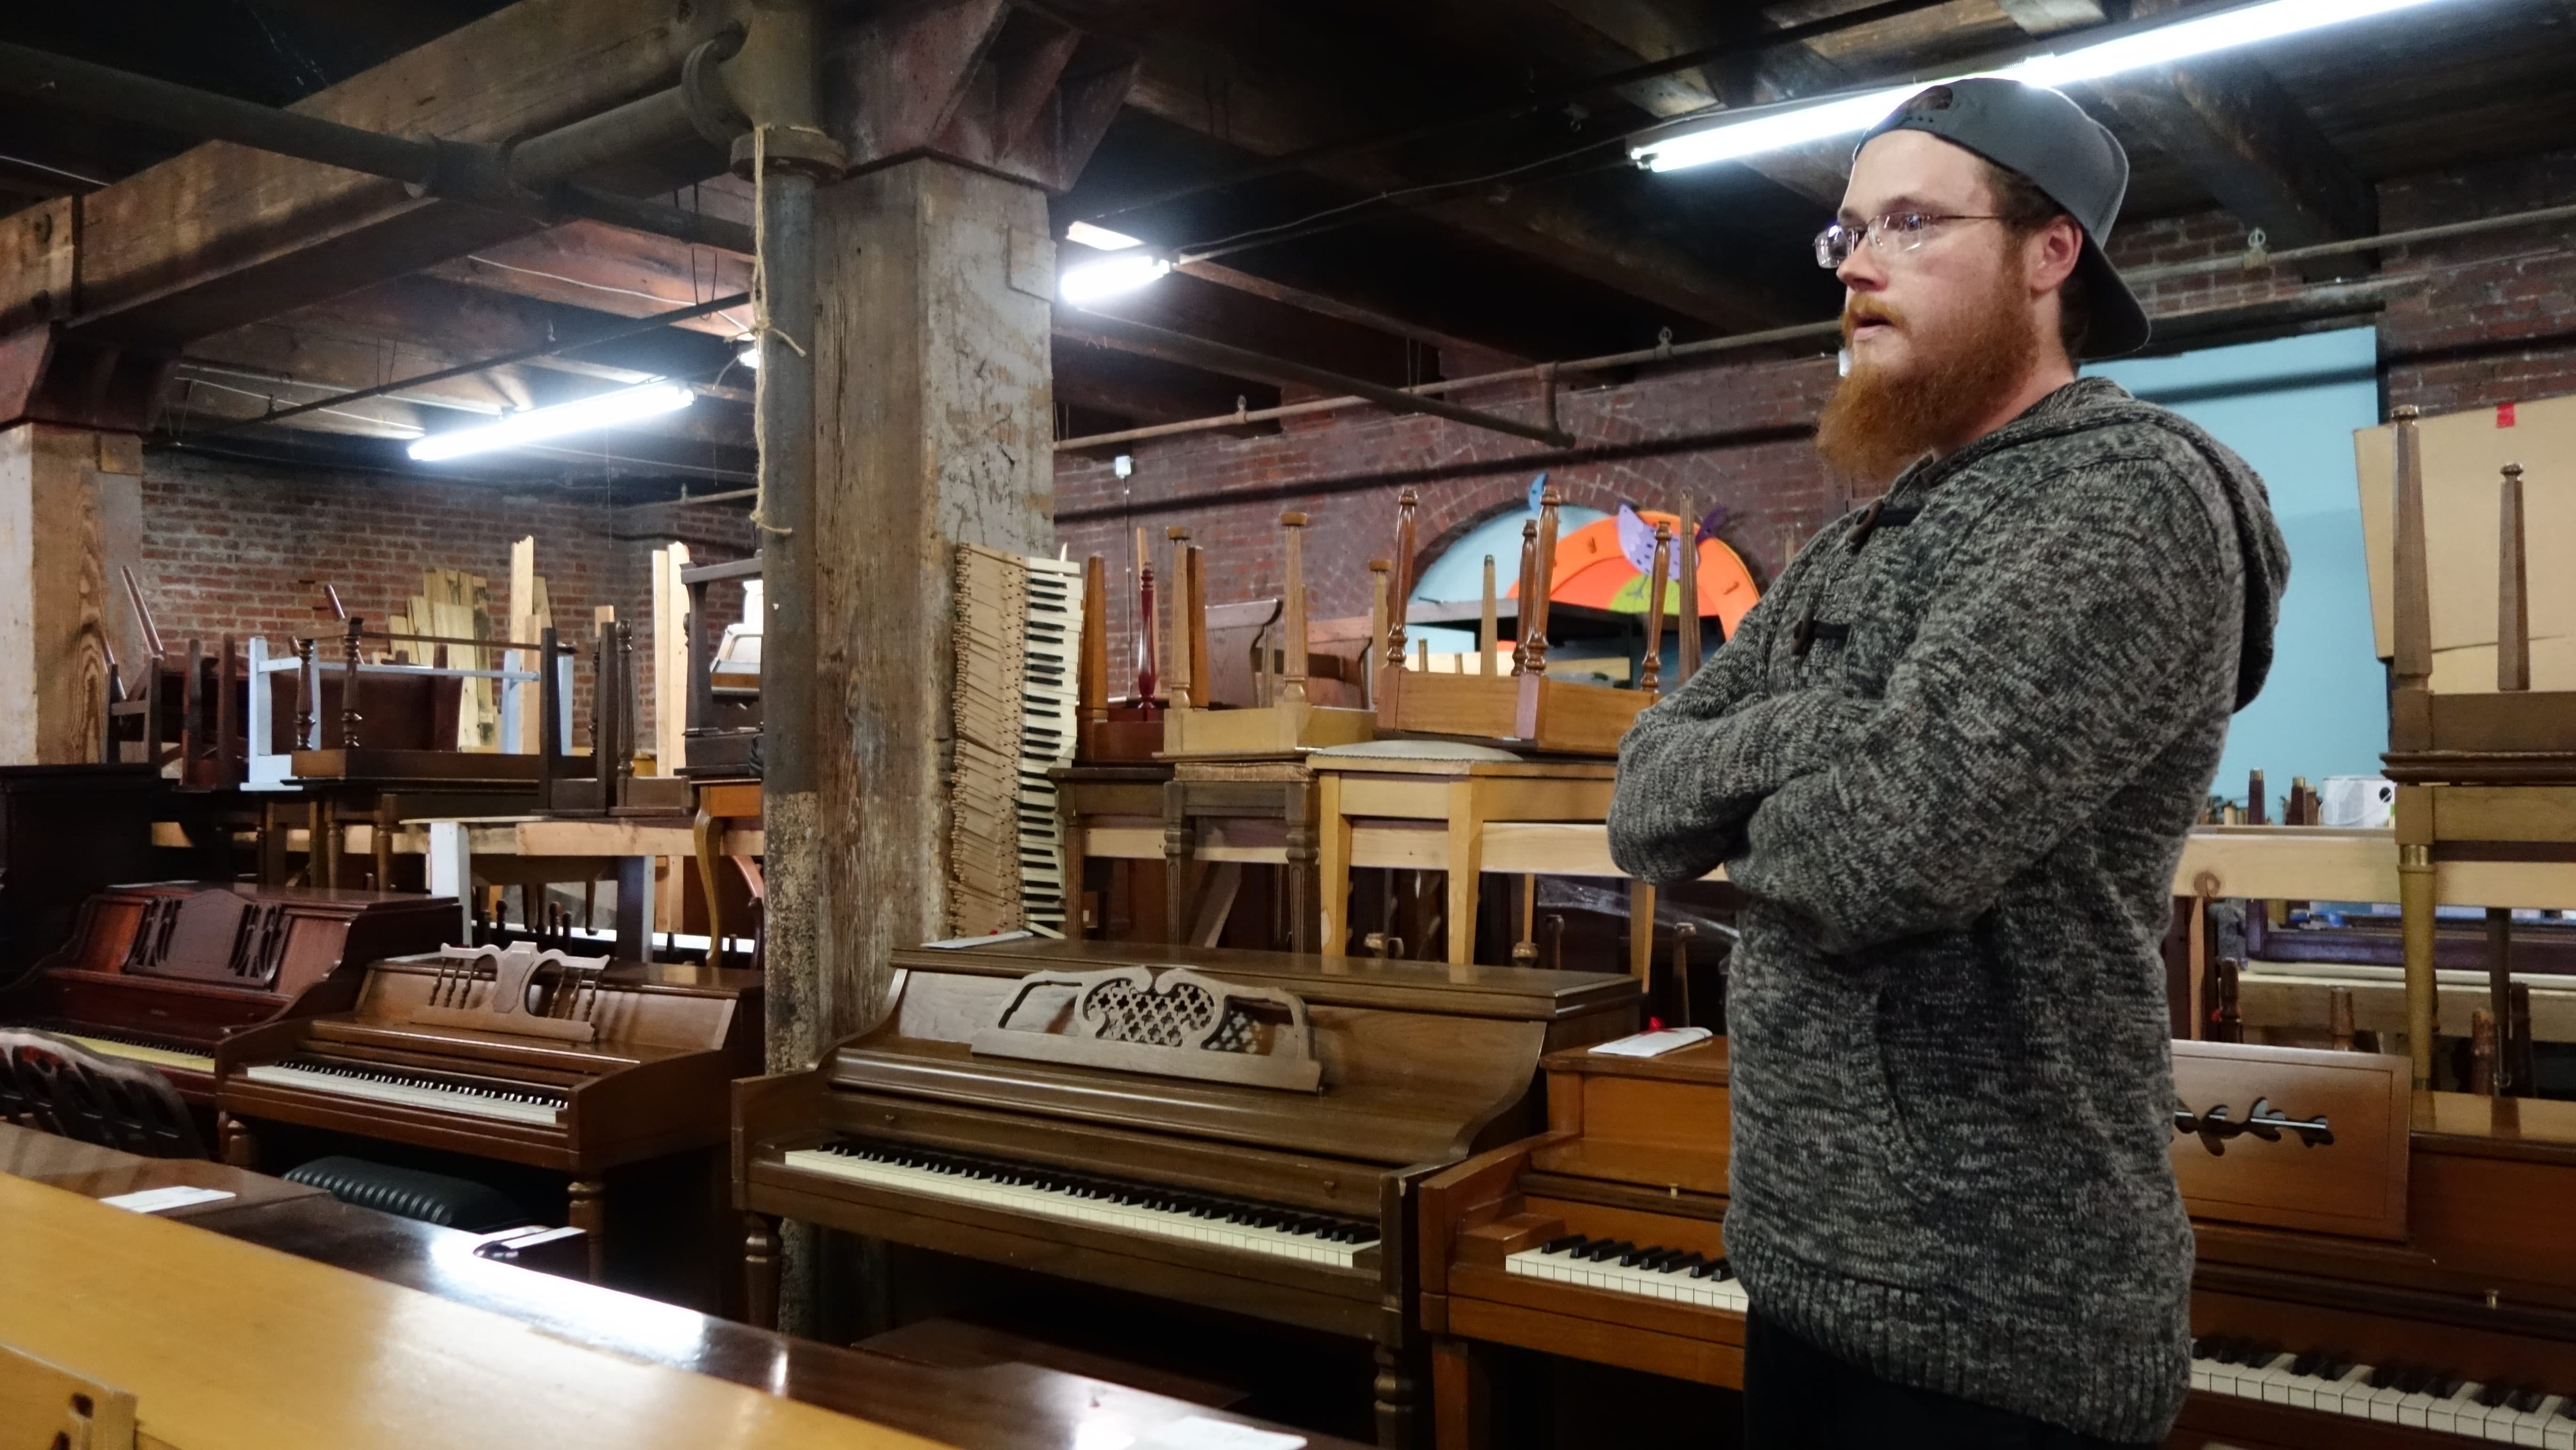 A man standing near pianos.